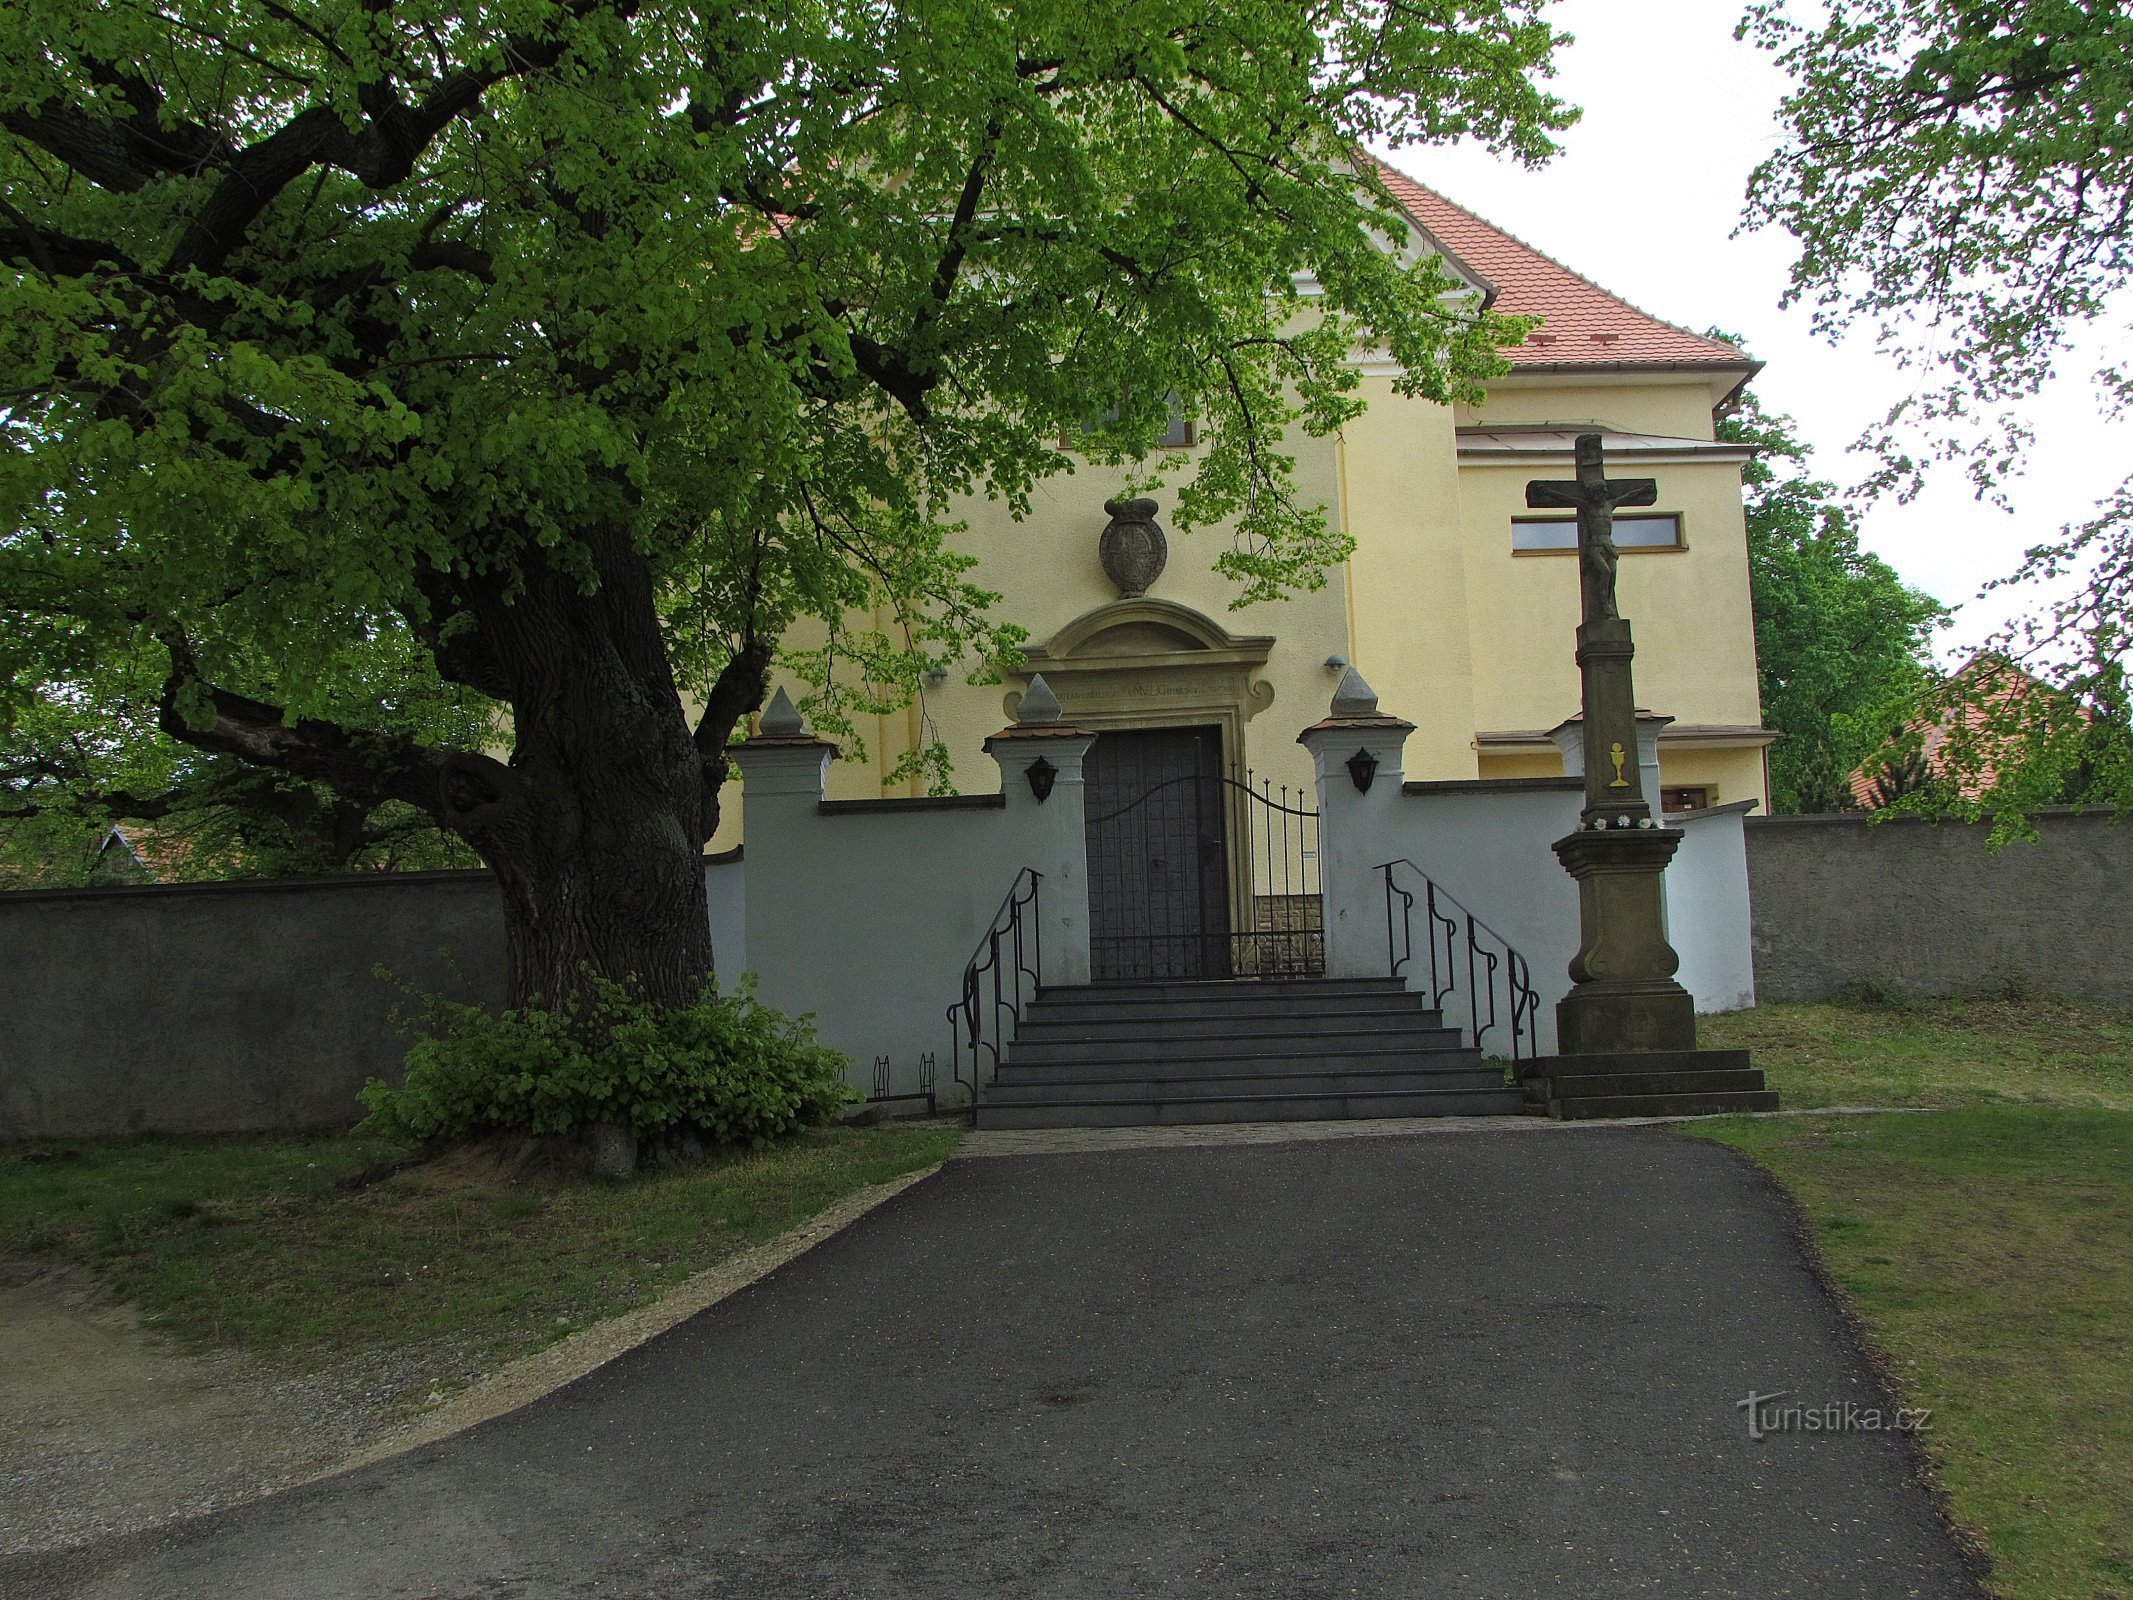 Kuželov - Den Hellige Treenigheds Kirke